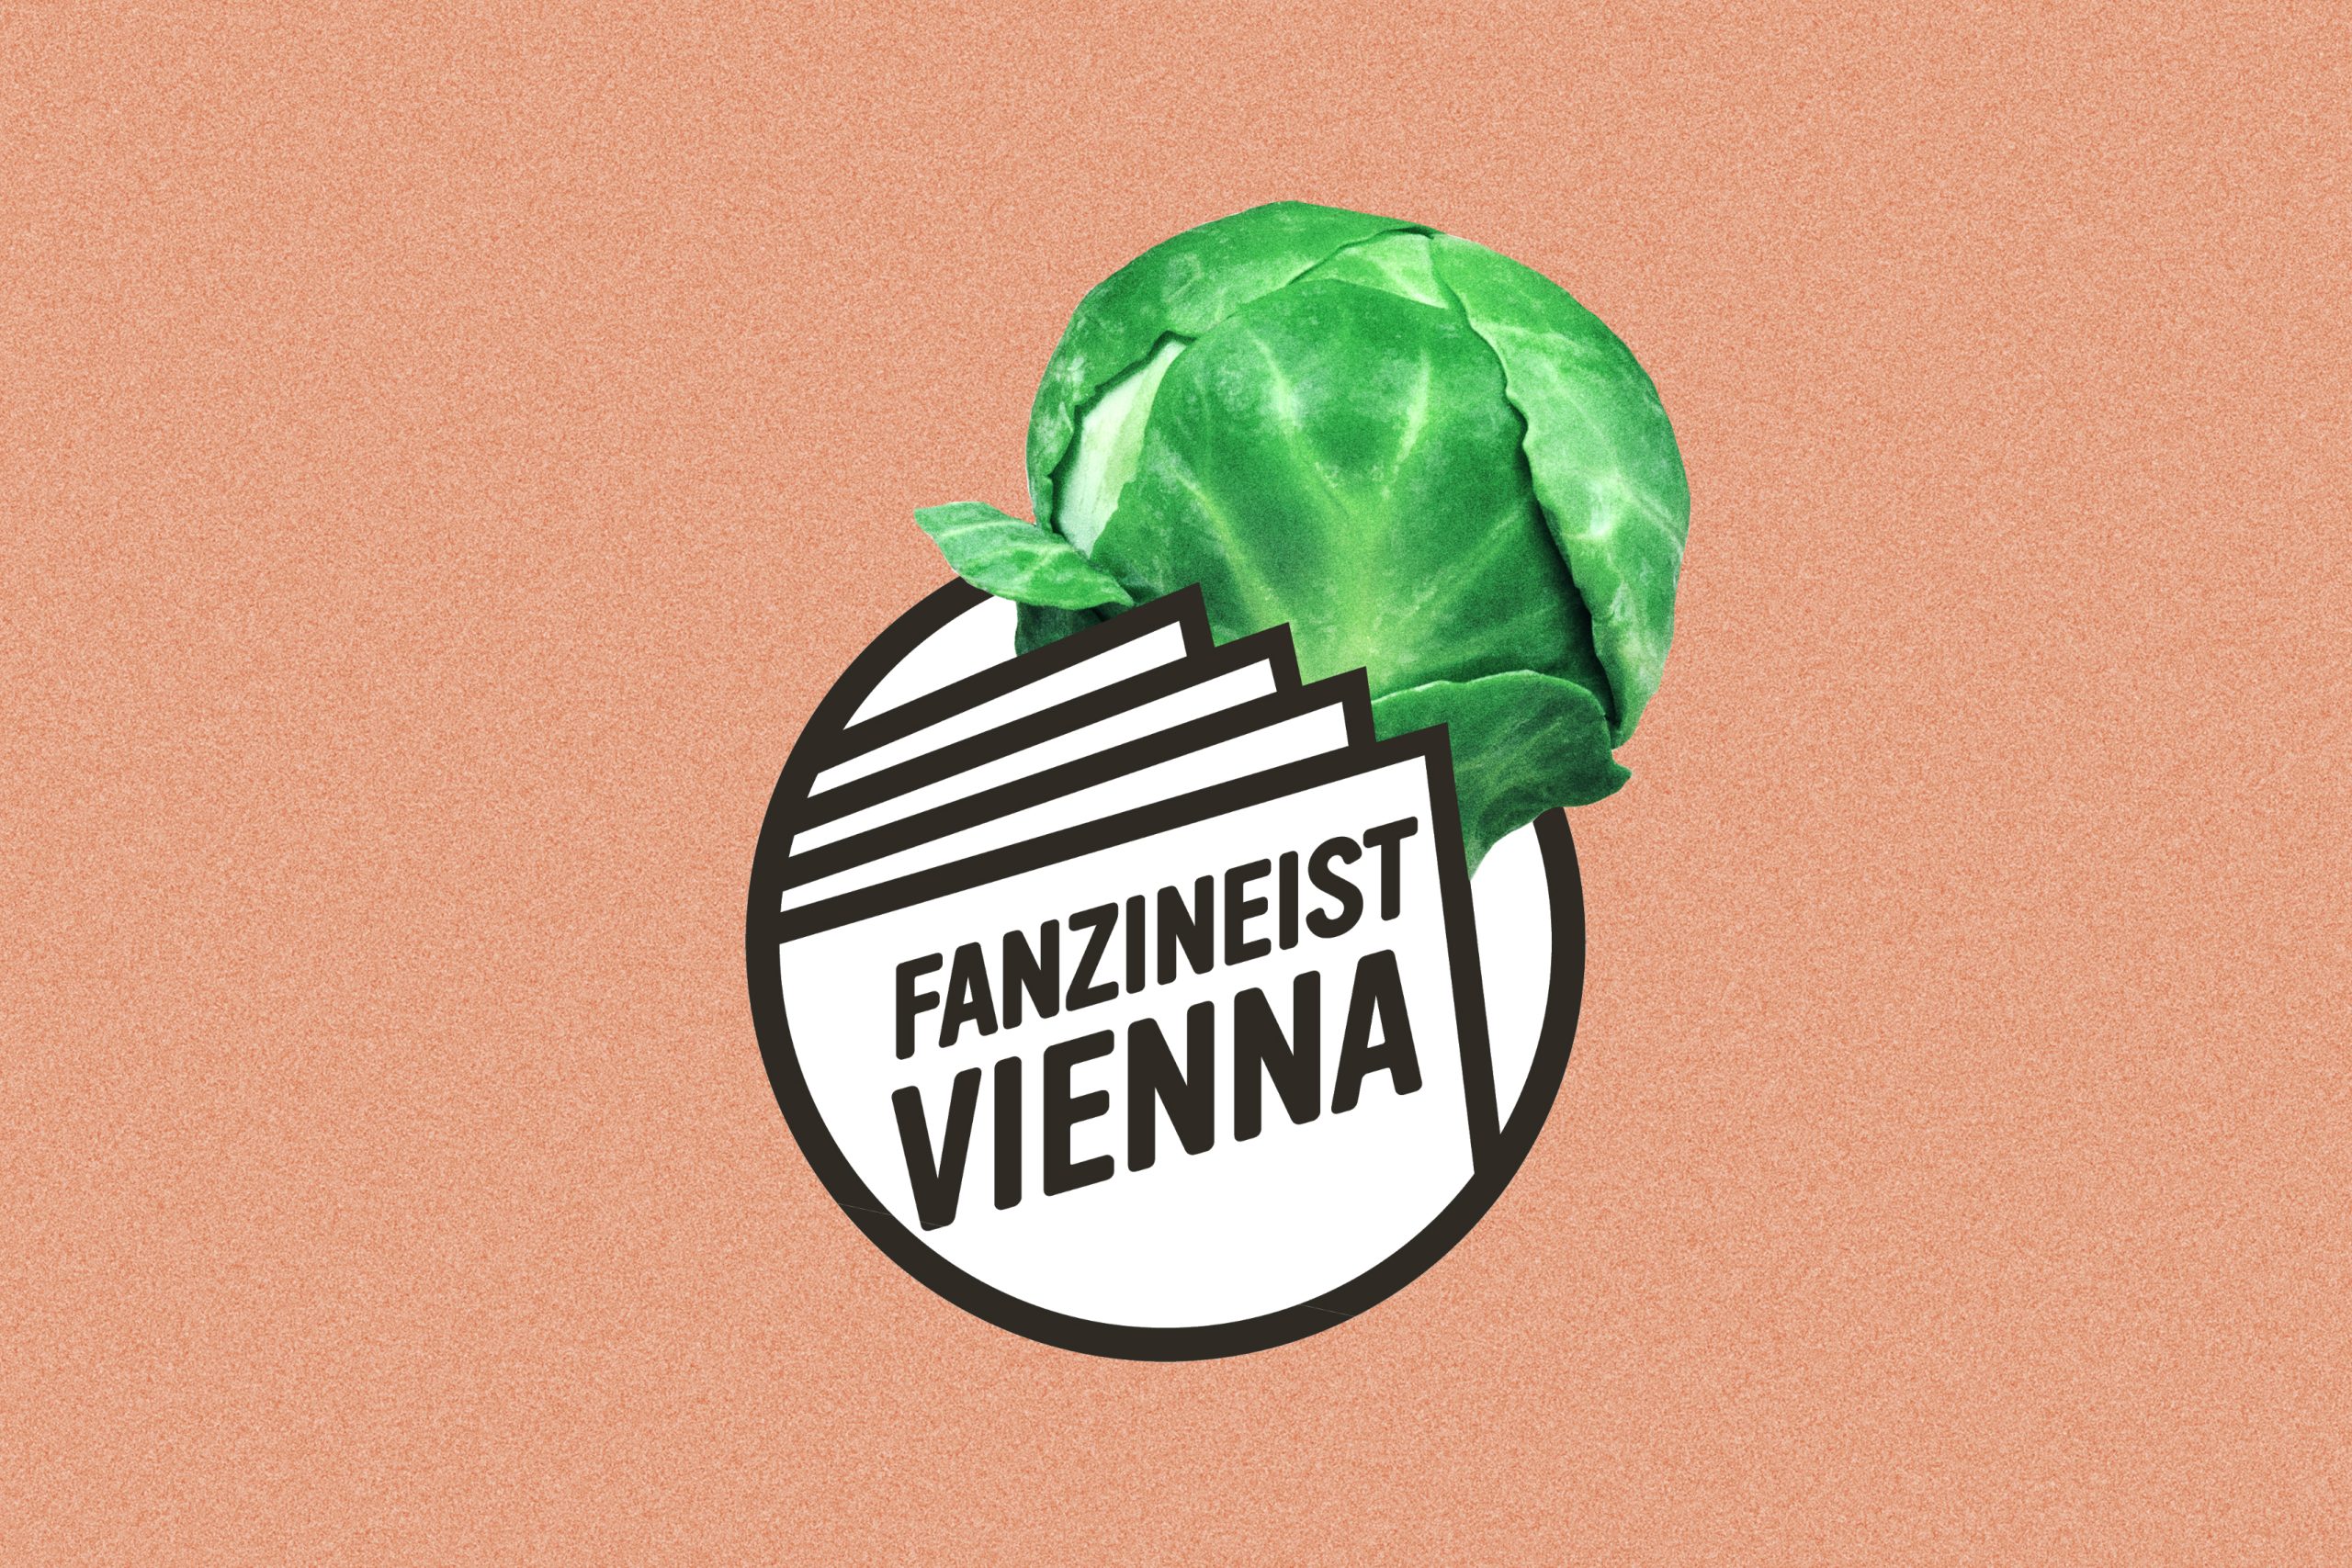 COMING SOON – Fanzineist Vienna